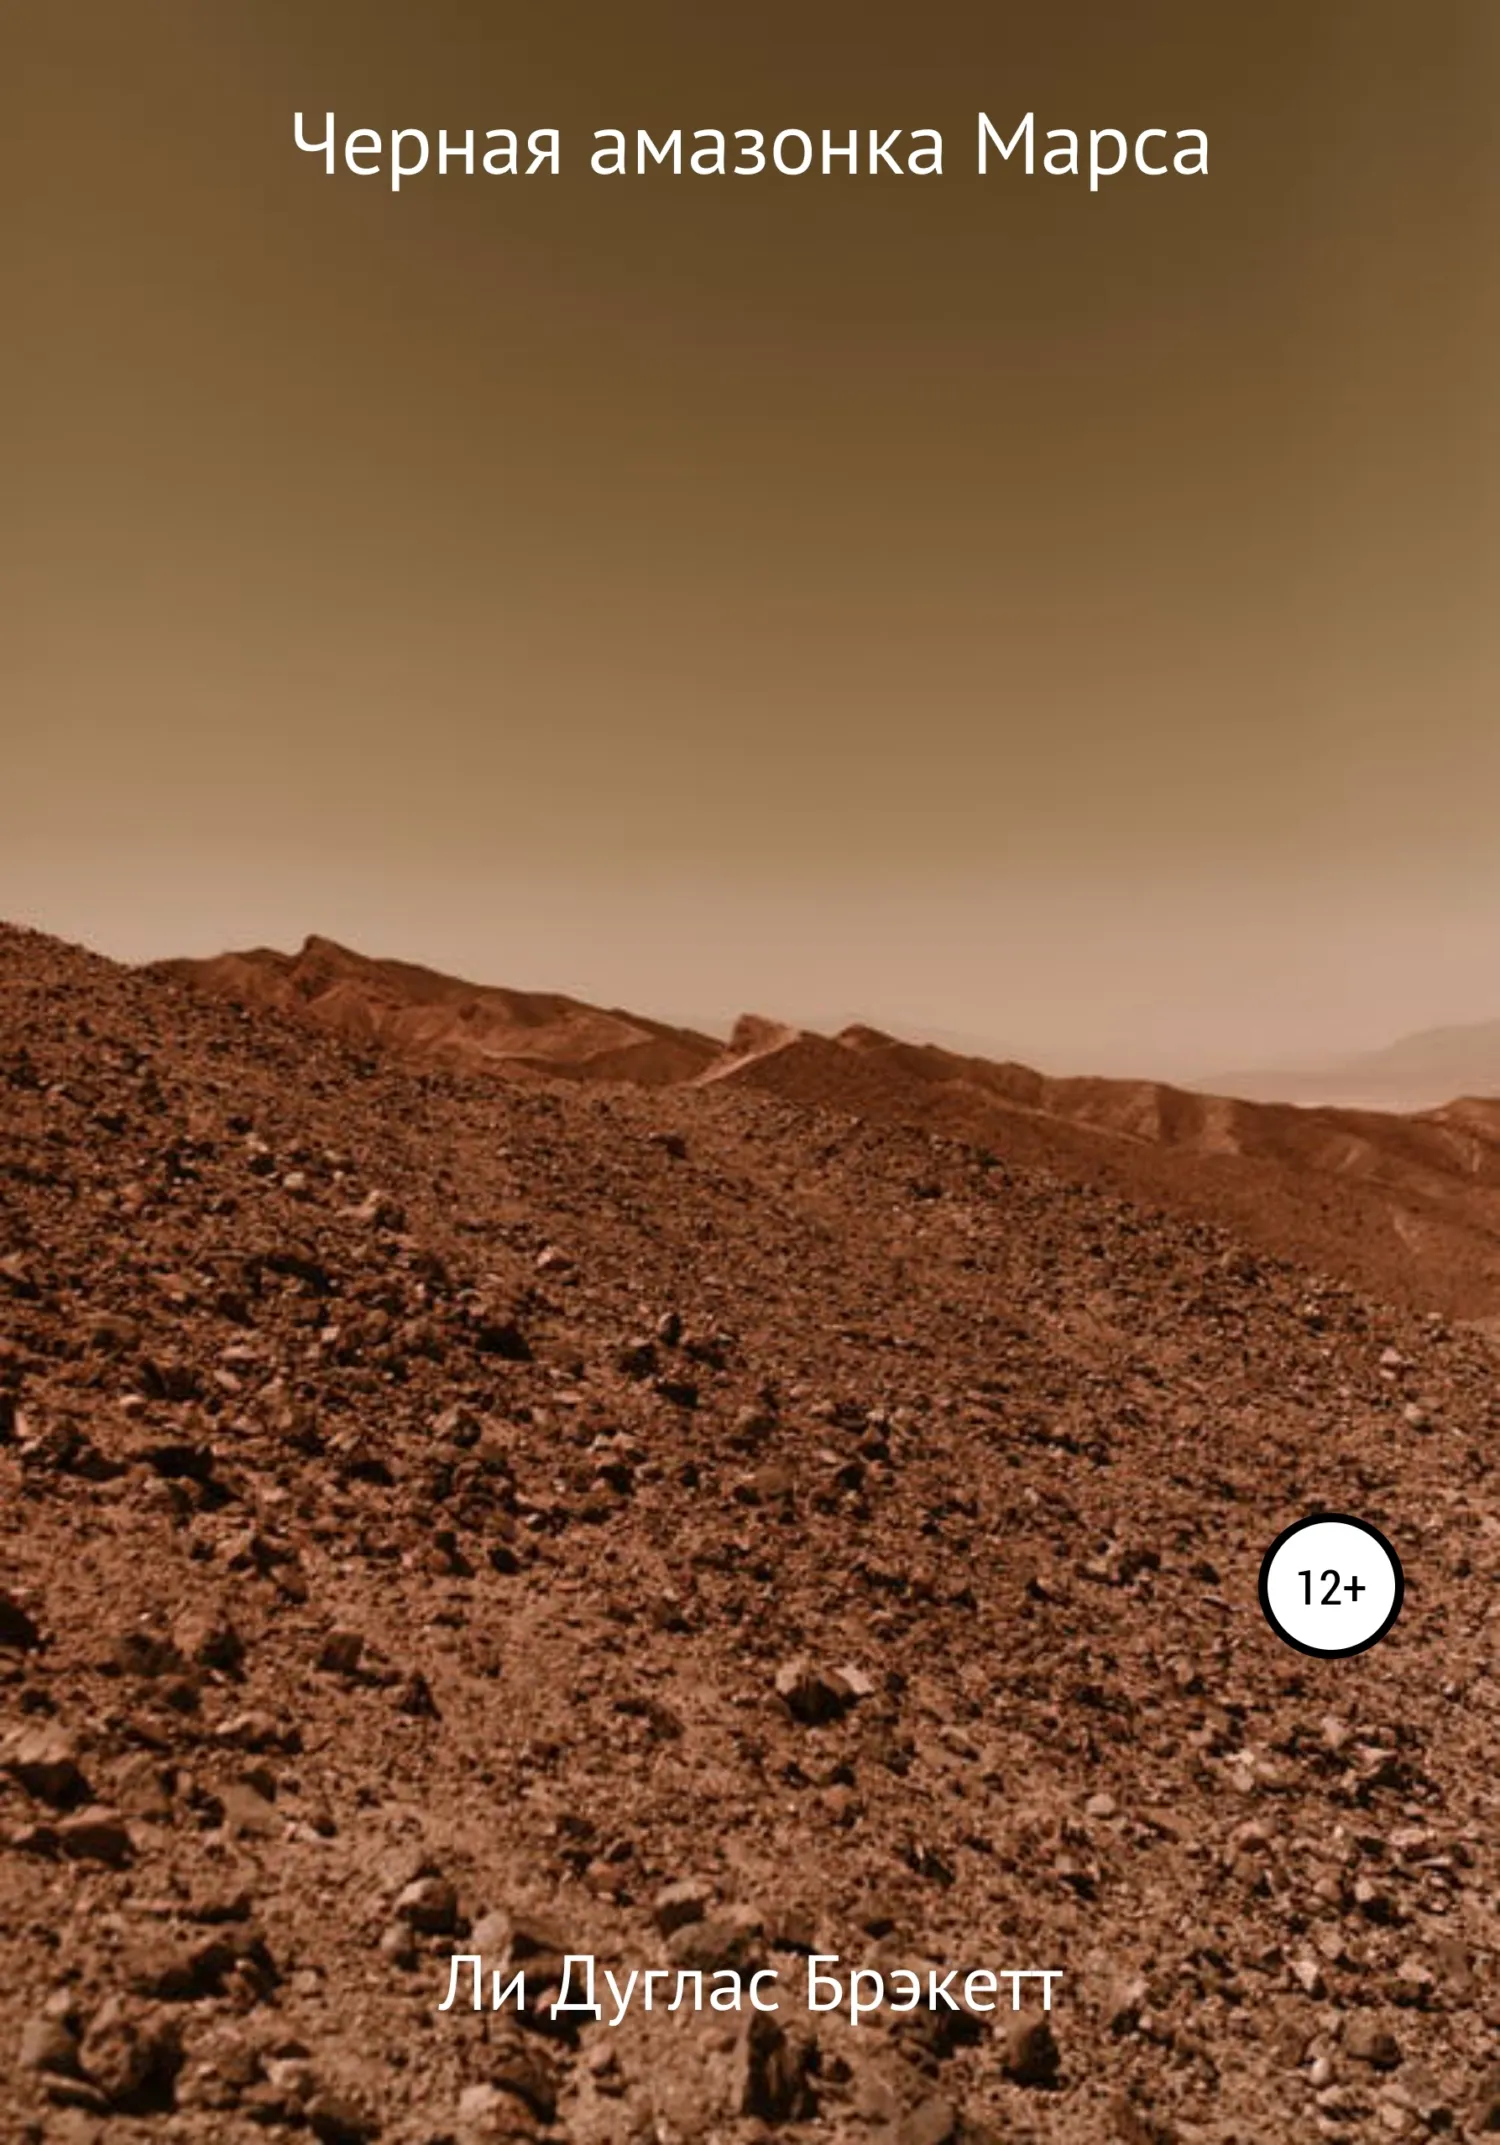 Подробнее о Черная амазонка Марса